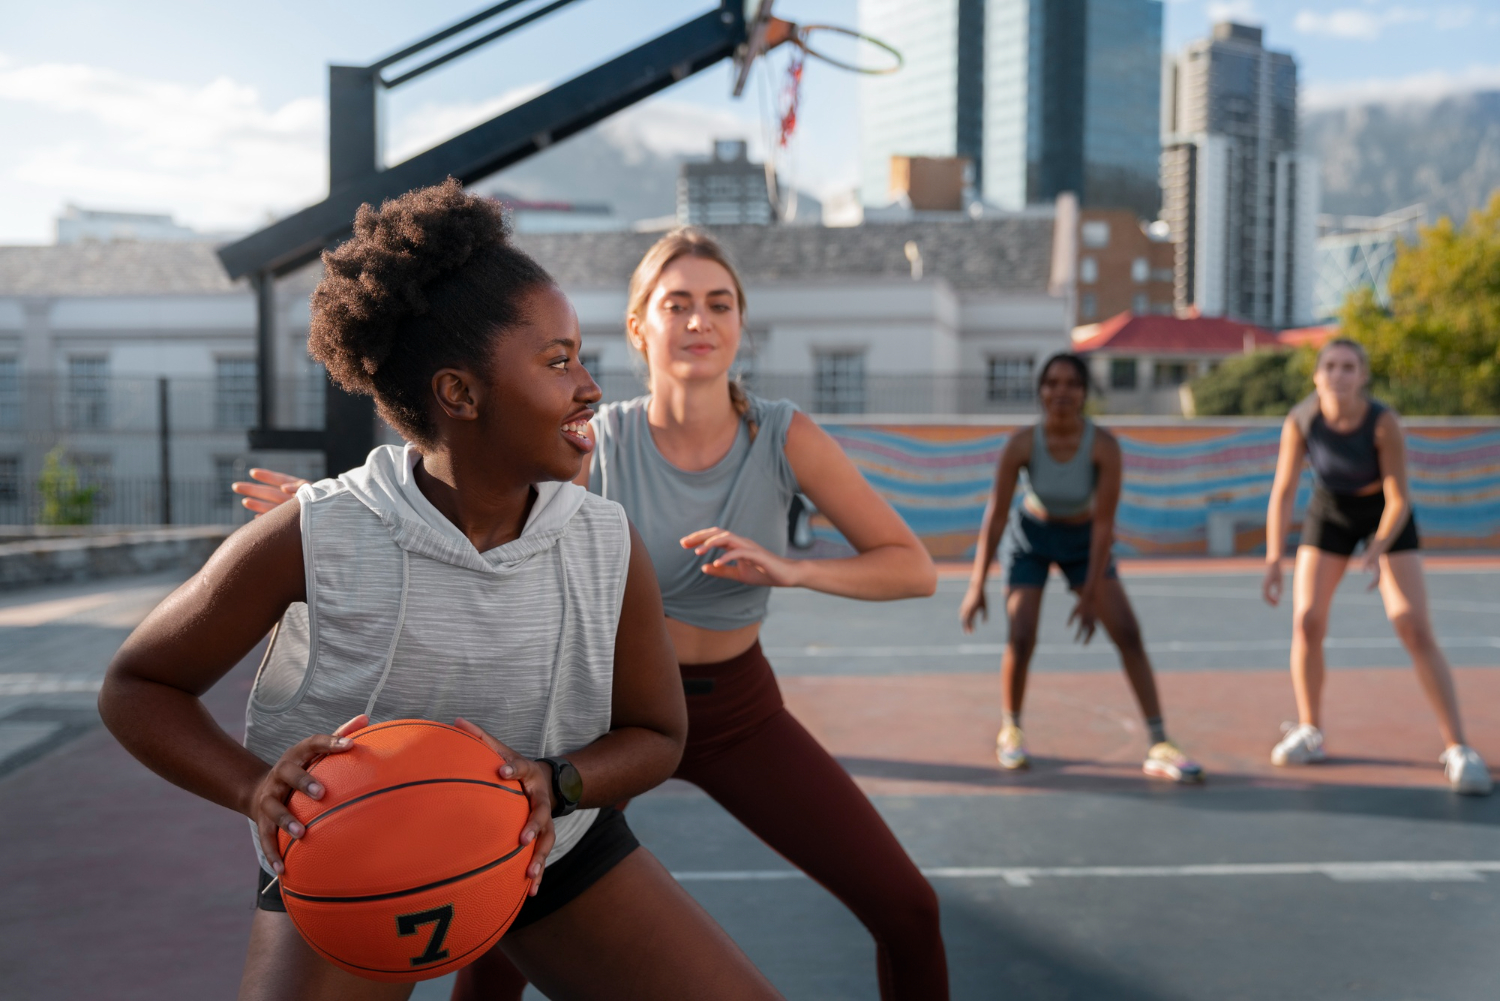 Vrouw gaat basketballen na het herstel van een blessure.